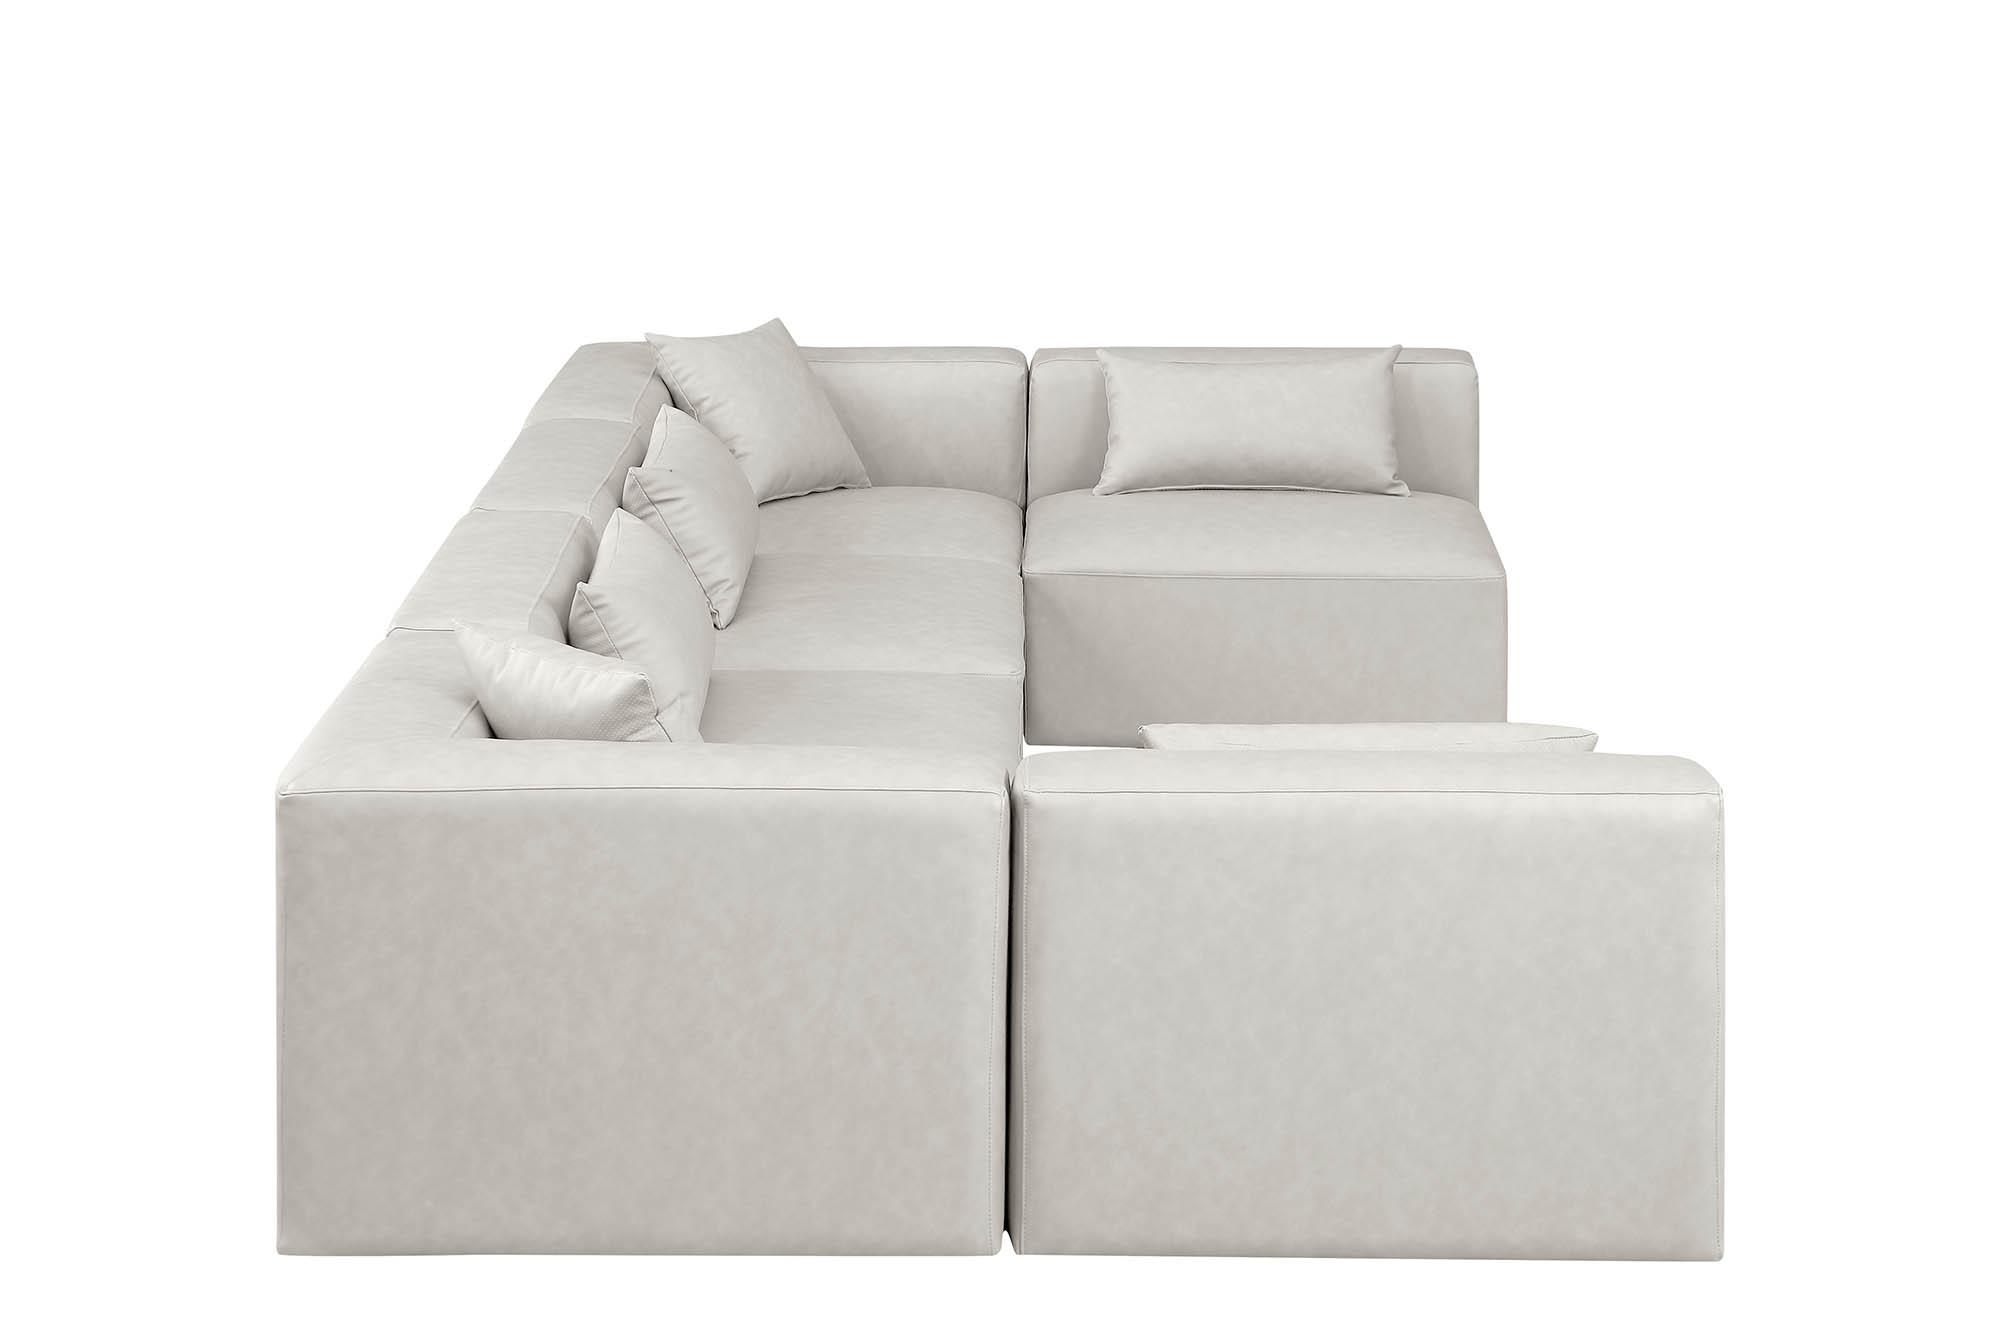 

    
Meridian Furniture CUBE 668Cream-Sec6D Modular Sectional Sofa Cream 668Cream-Sec6D
